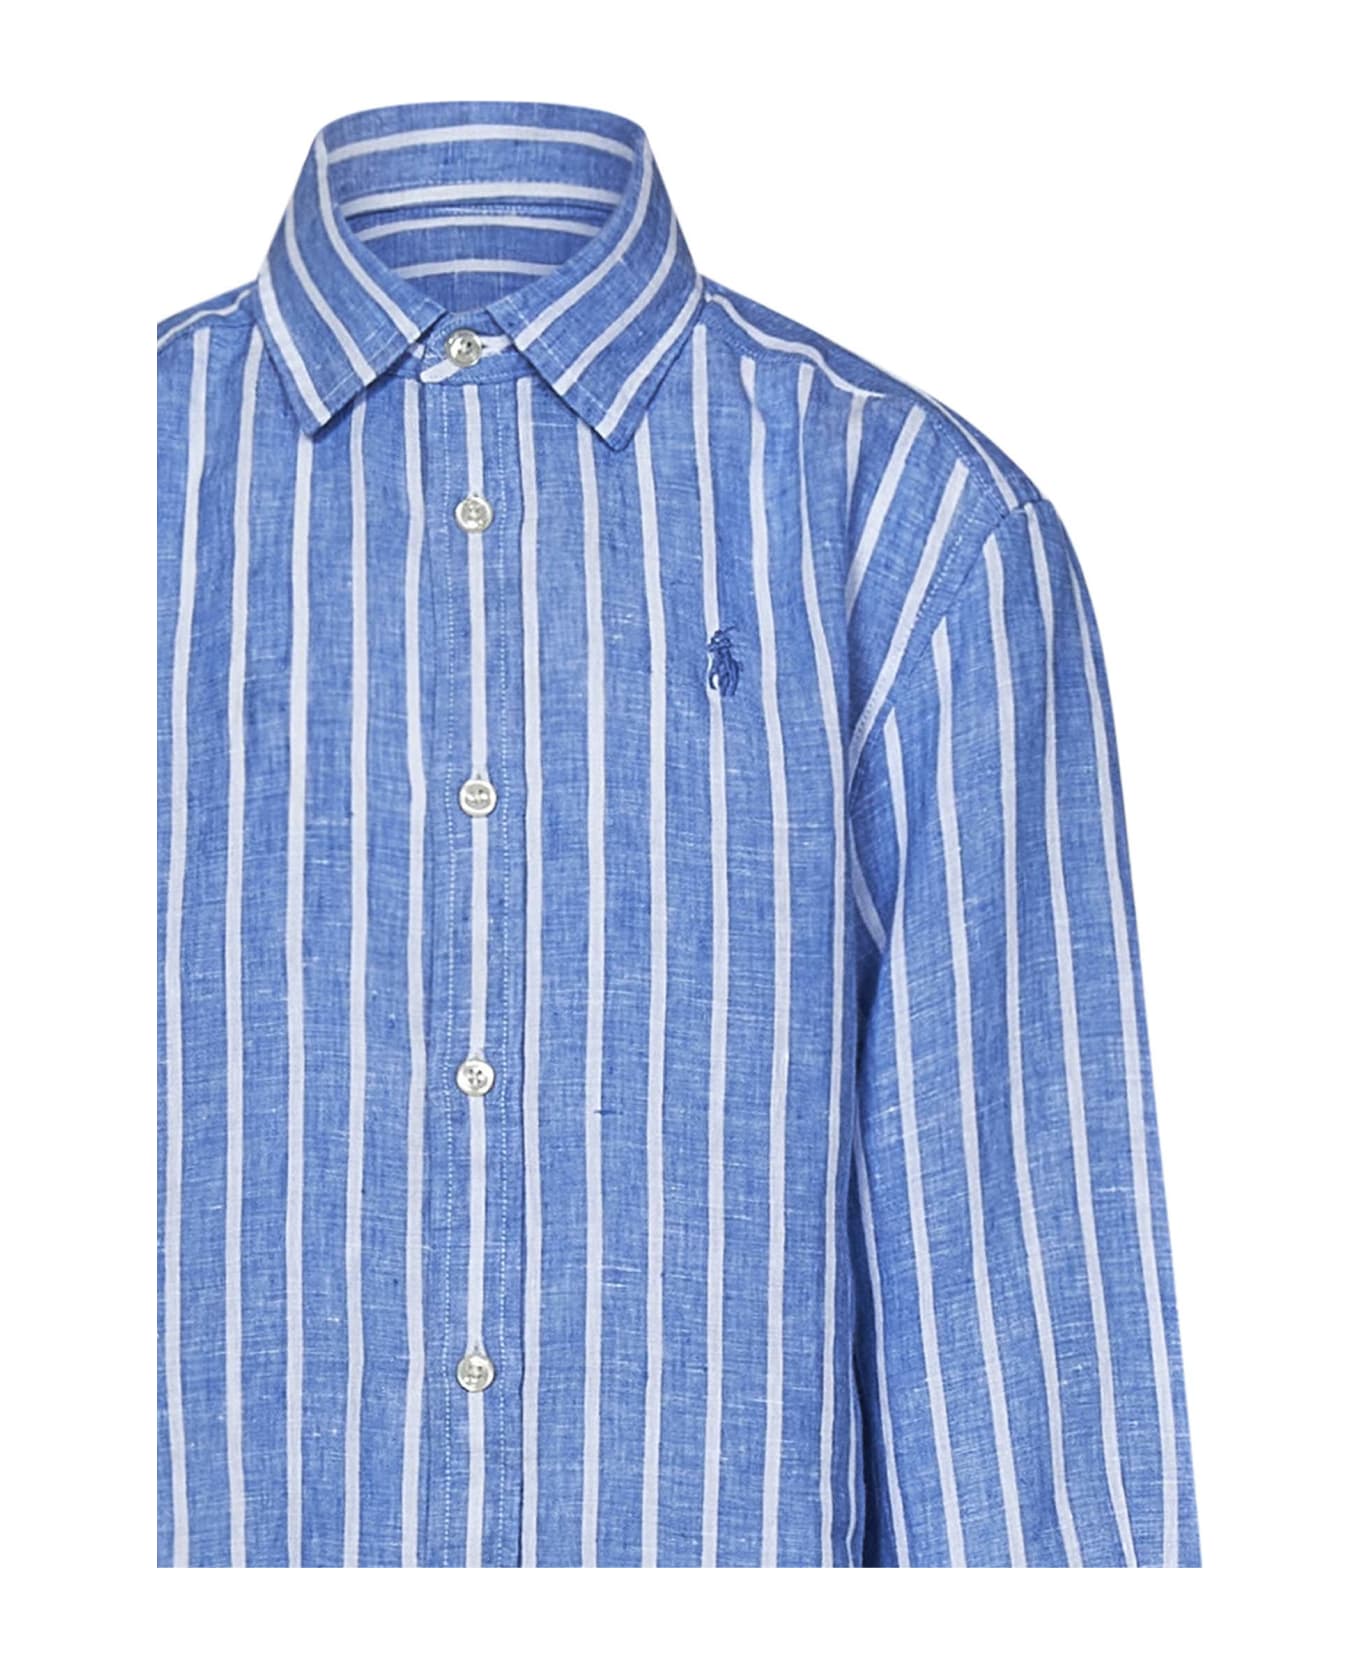 Polo Ralph Lauren Kids Shirt - Blue